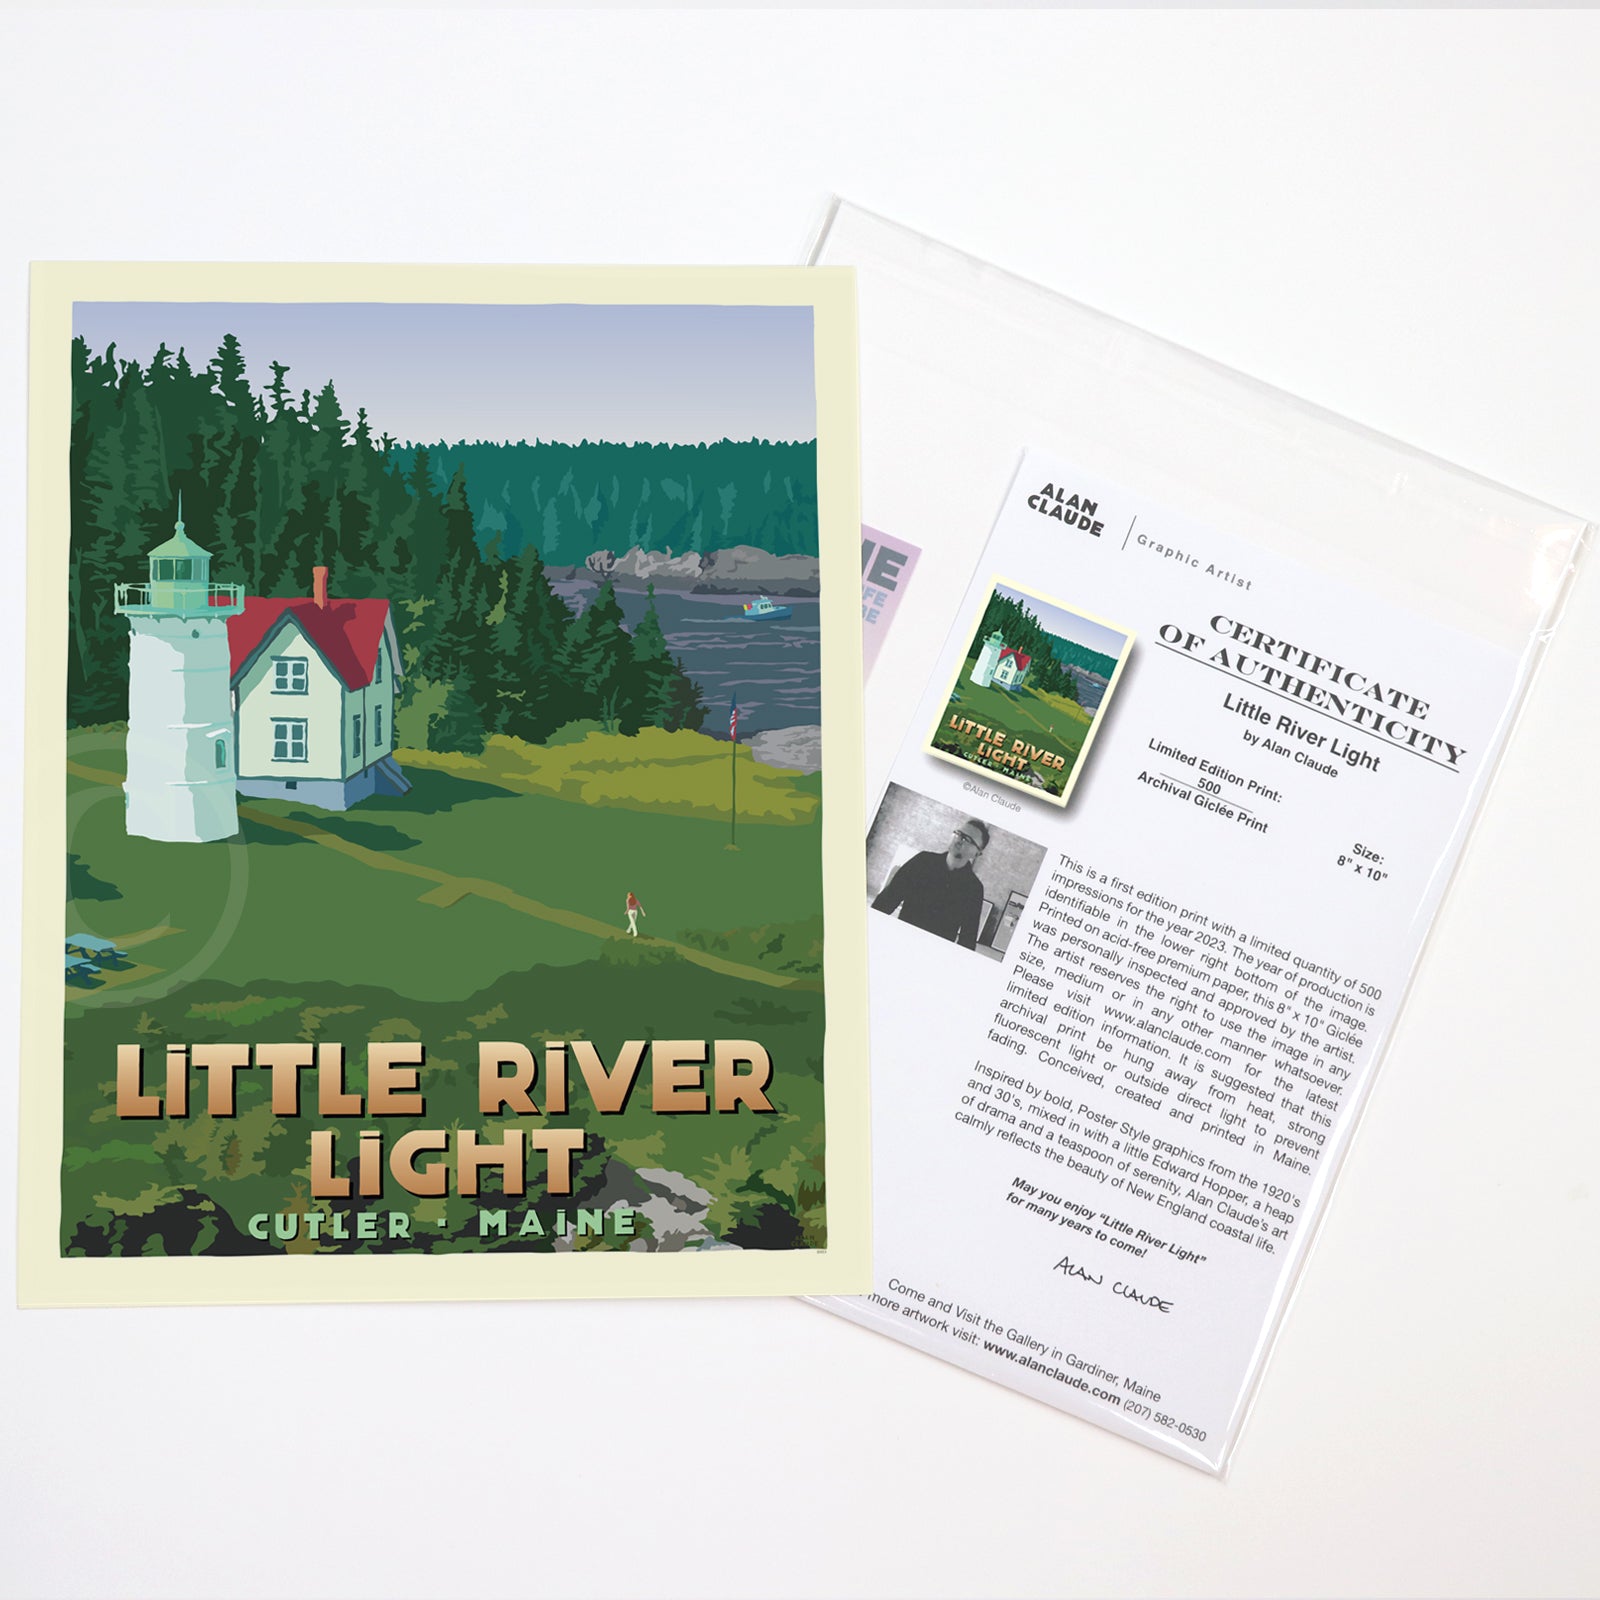 Little River Light Art Print 8" x 10" Travel Poster By Alan Claude - Cutler, Maine